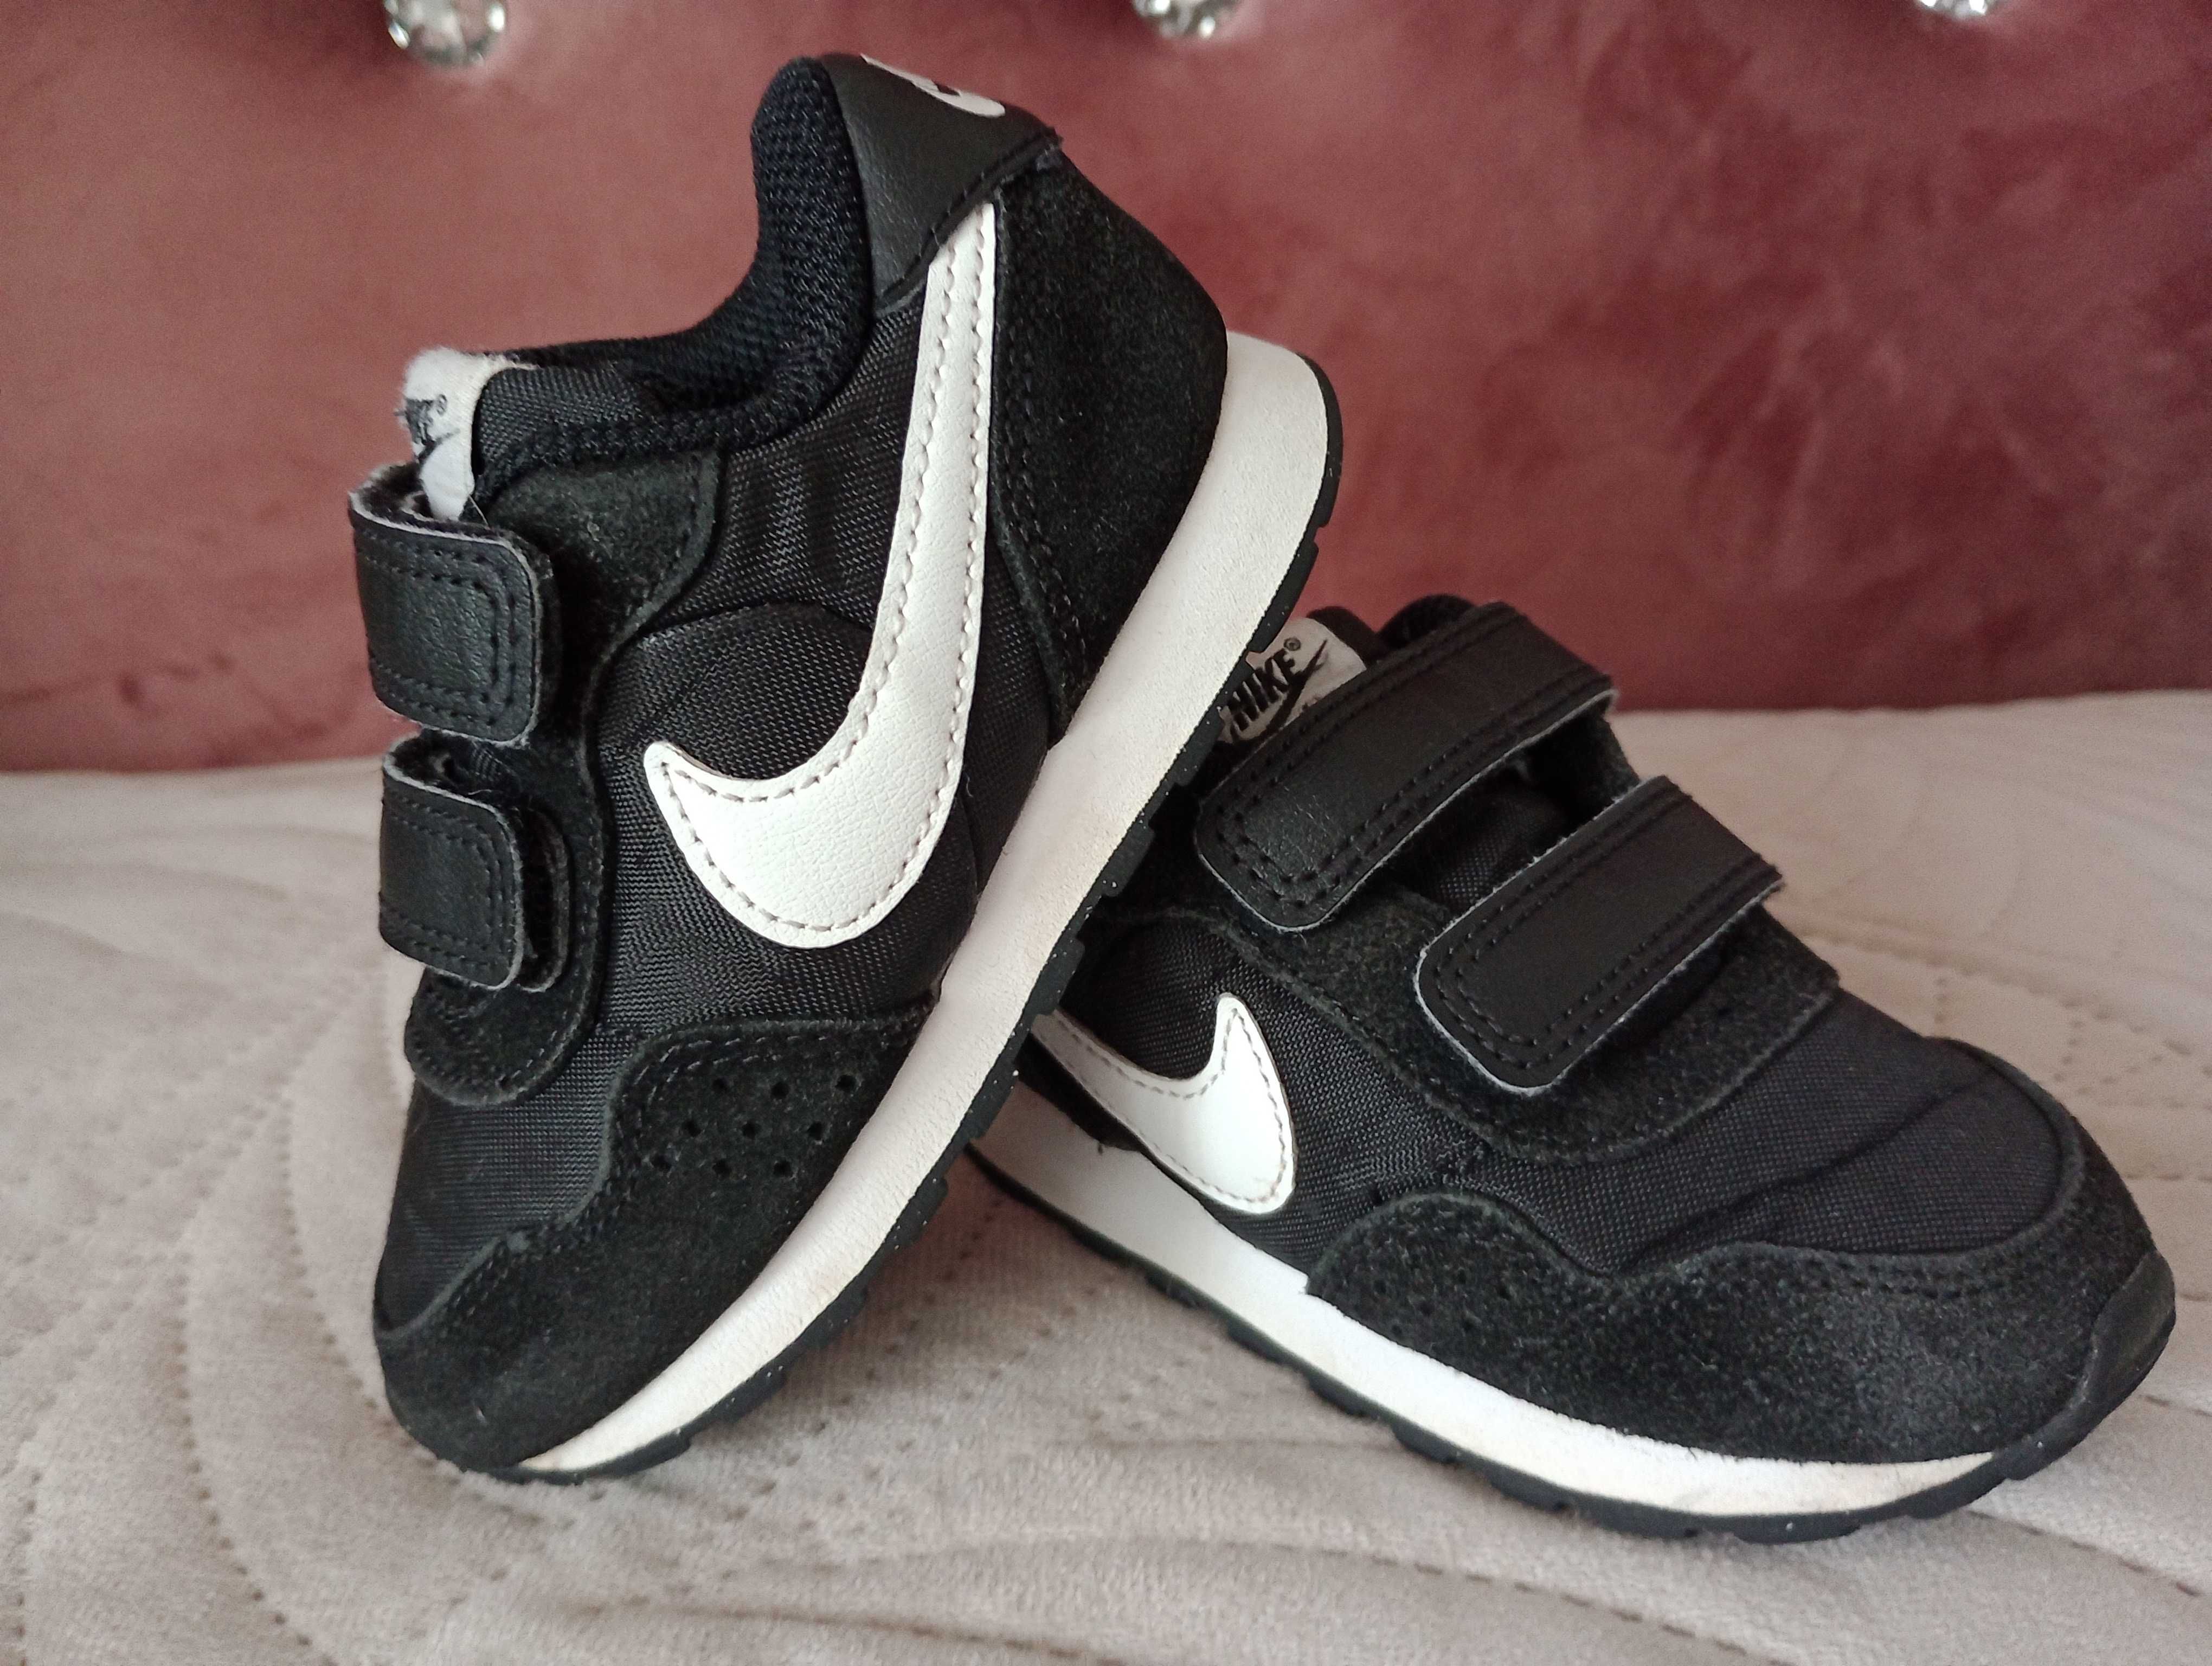 Buty sportowe chłopięce 22 Nike wkładka 14cm CN 8560 buty na rzepy